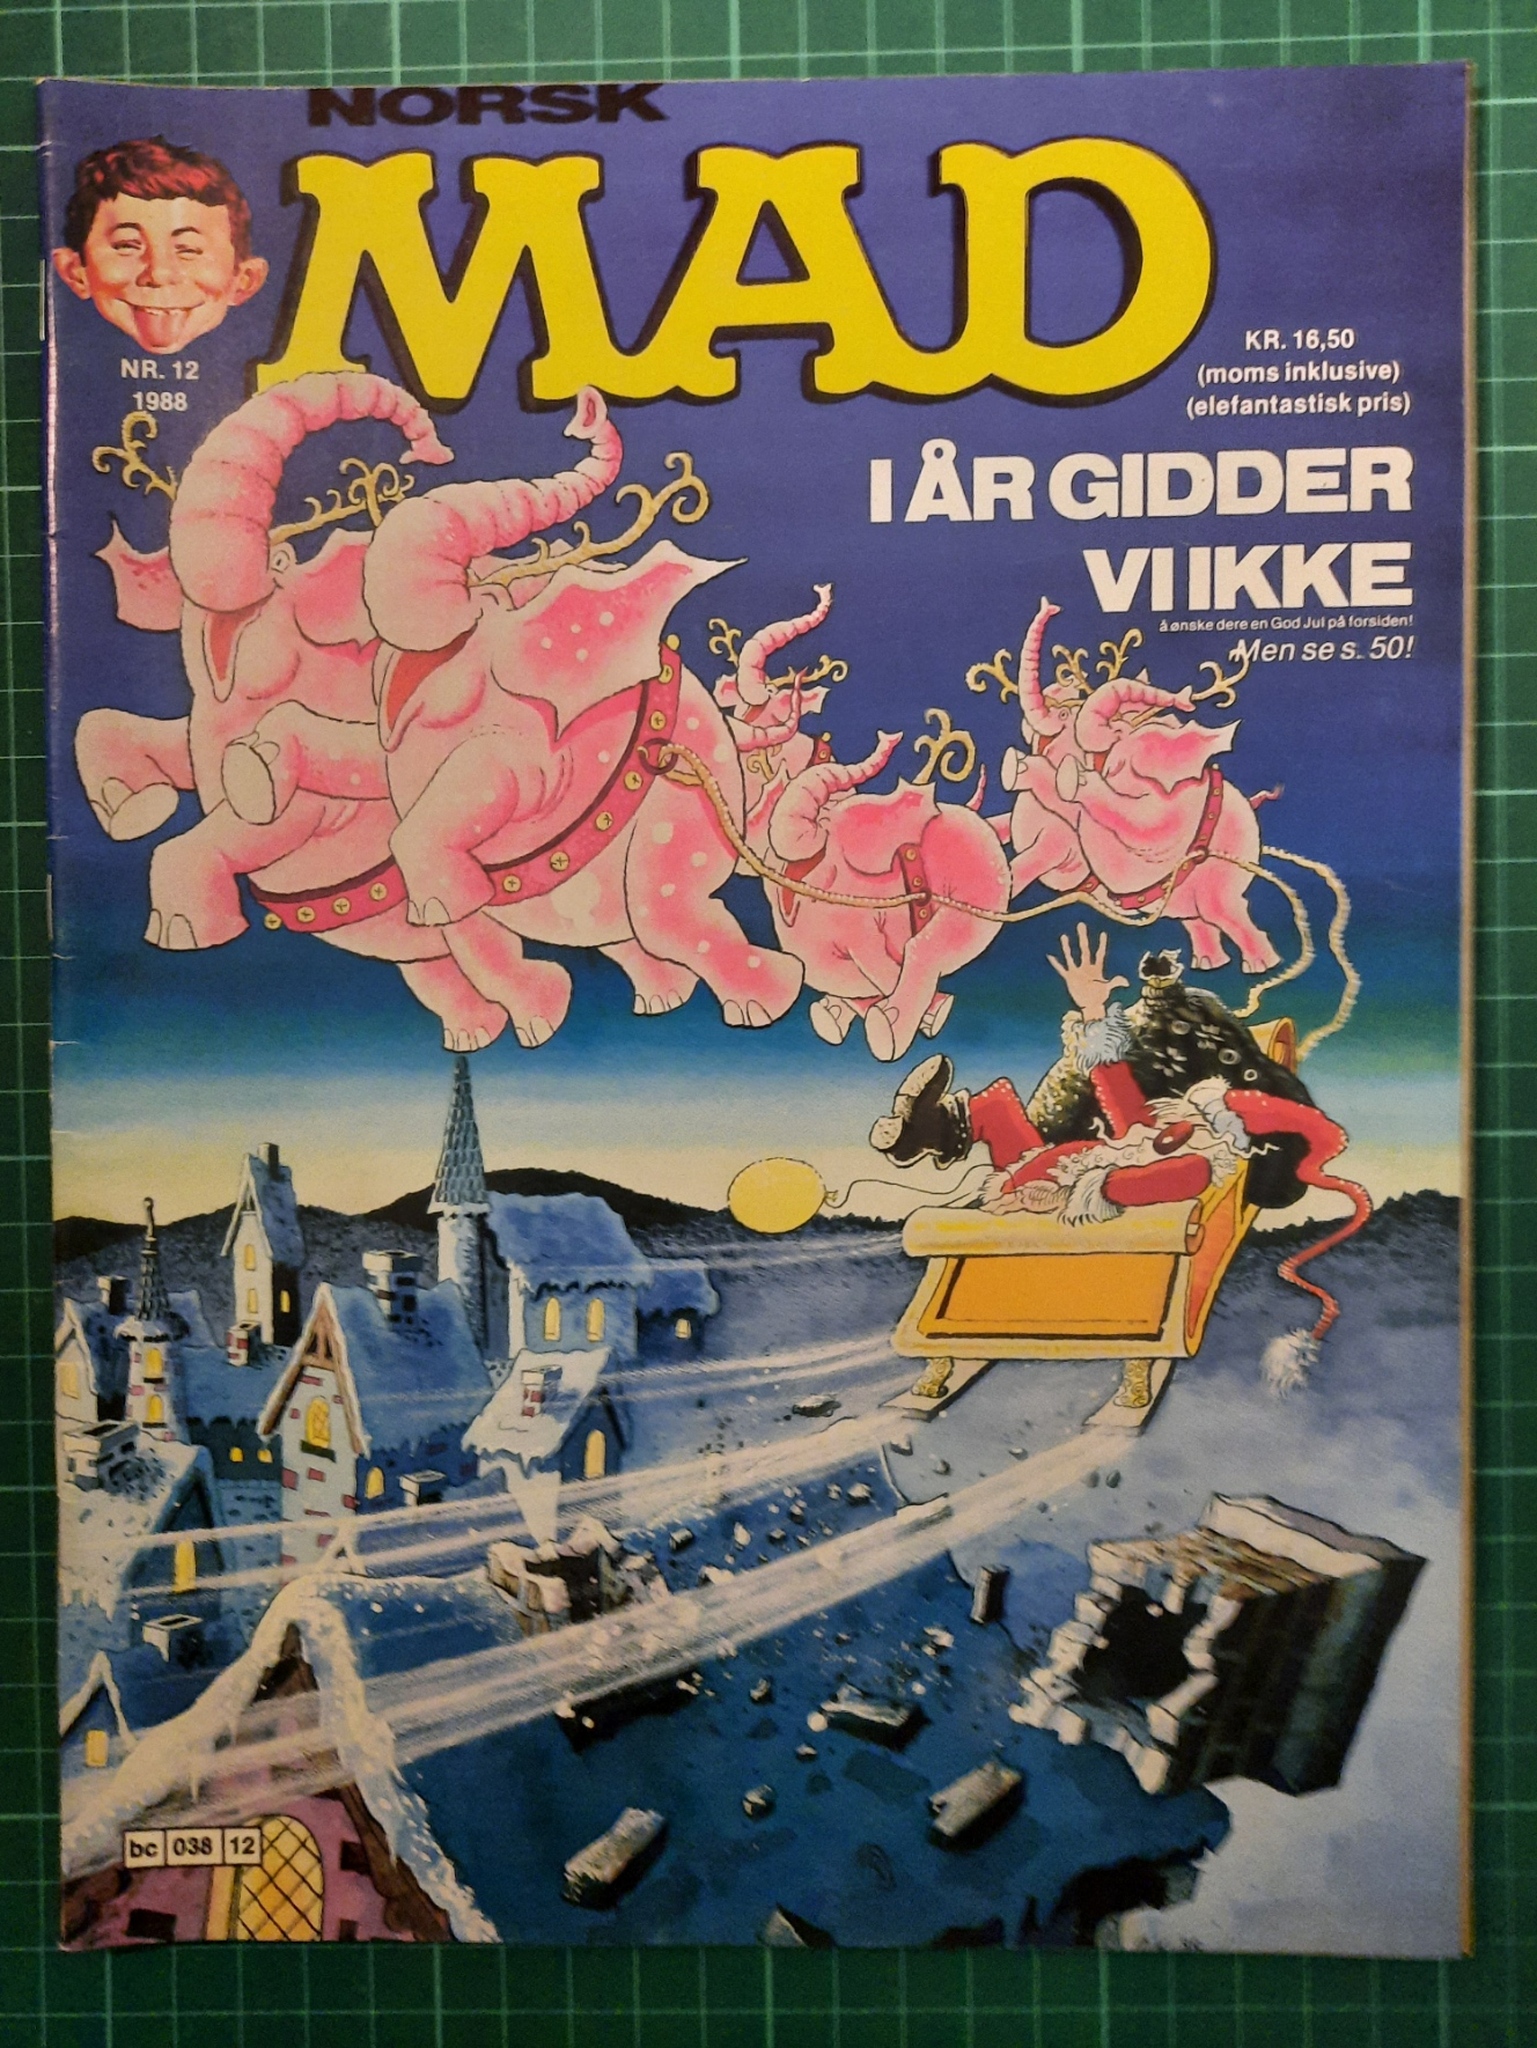 Mad 1988 - 12